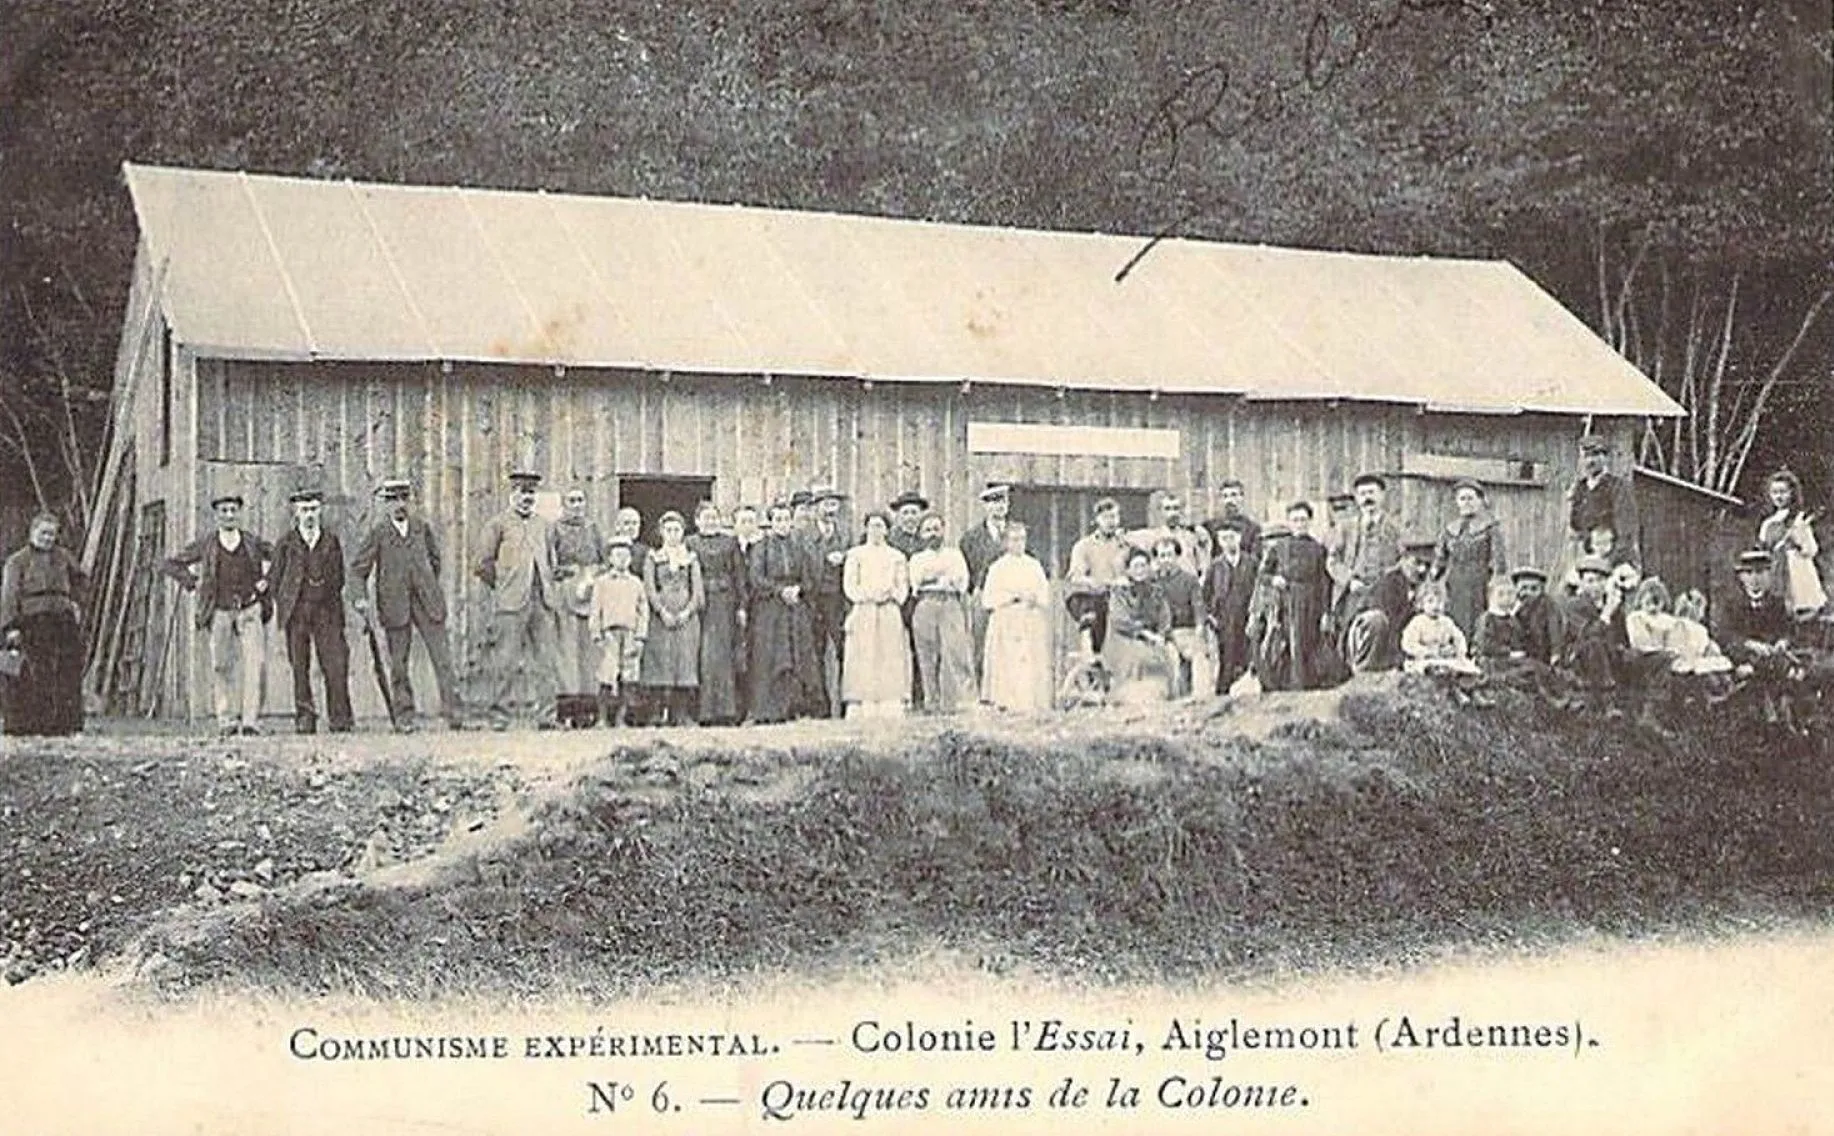 Photo showing: L’Essai est une colonie libertaire fondée, en 1903, par Jean-Charles Fortuné Henry à Aiglemont dans les Ardennes françaises.